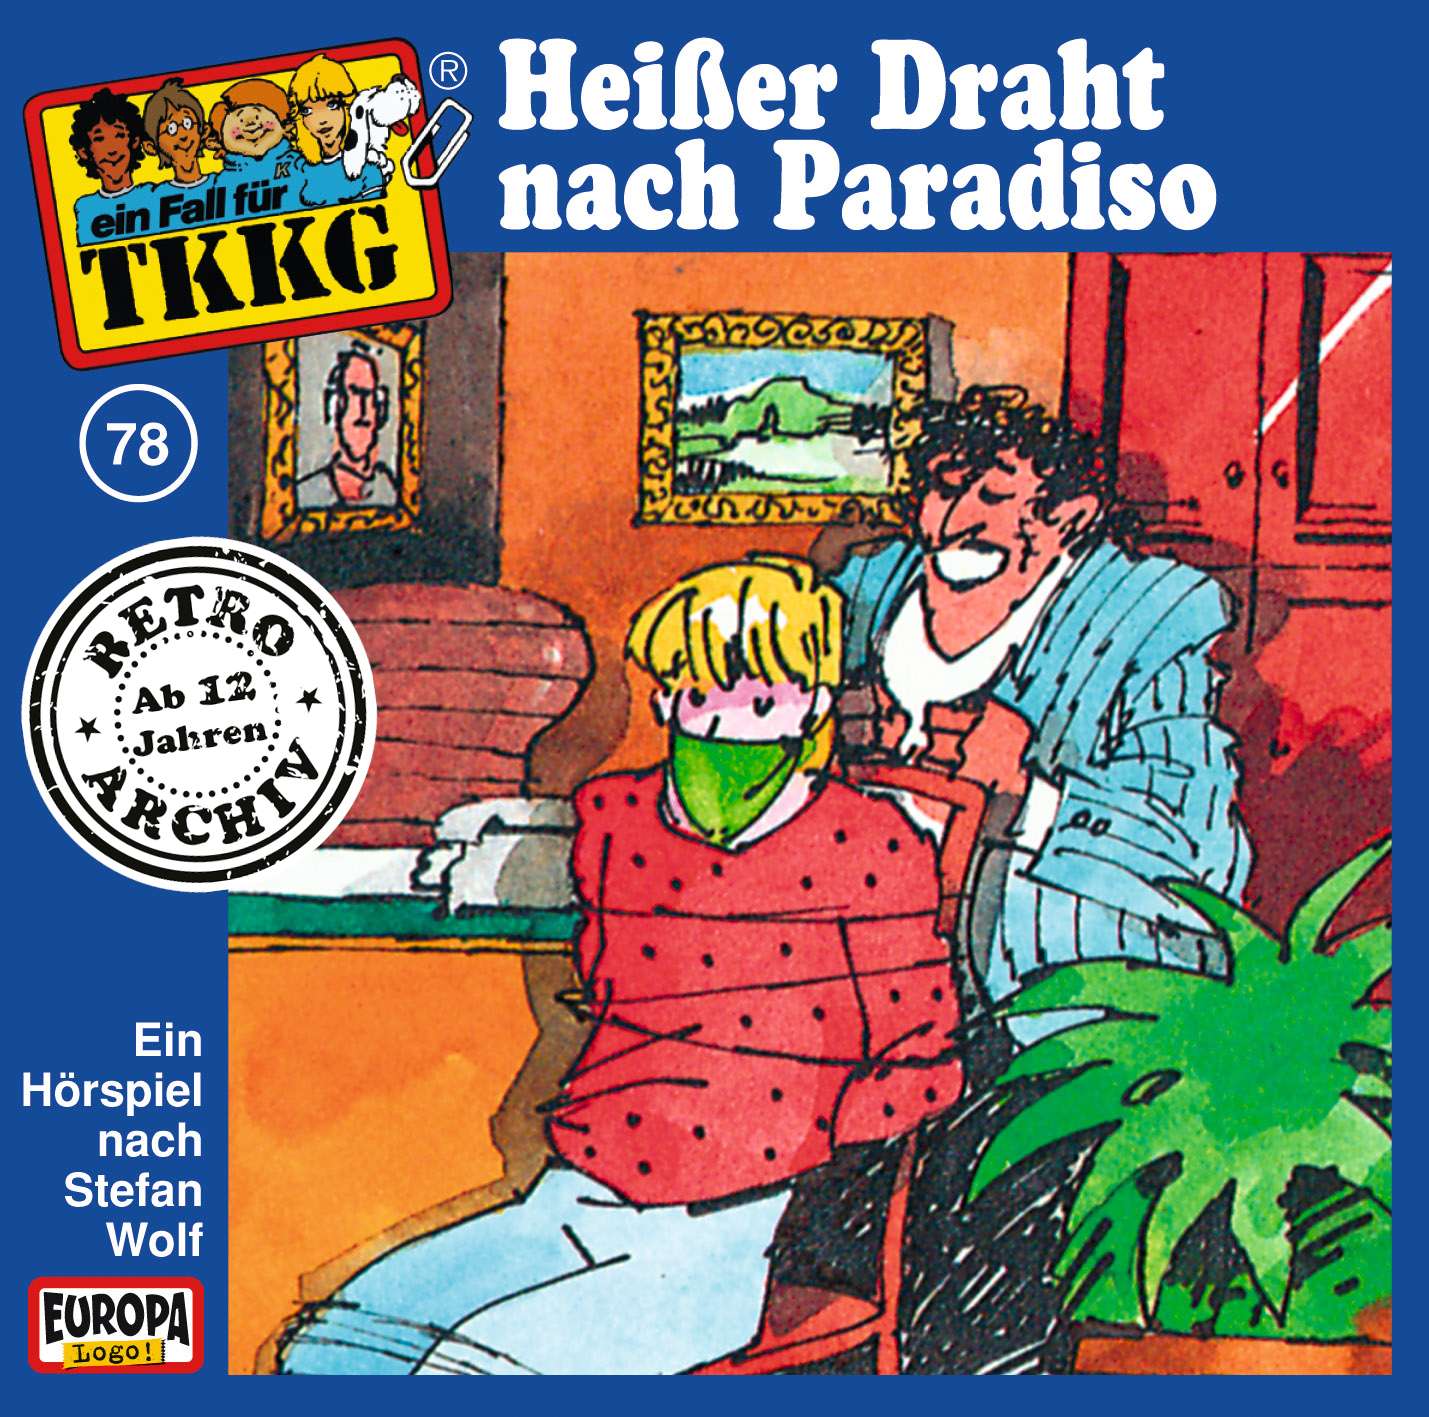 TKKG Retro-Archiv - Heißer Draht nach Paradiso